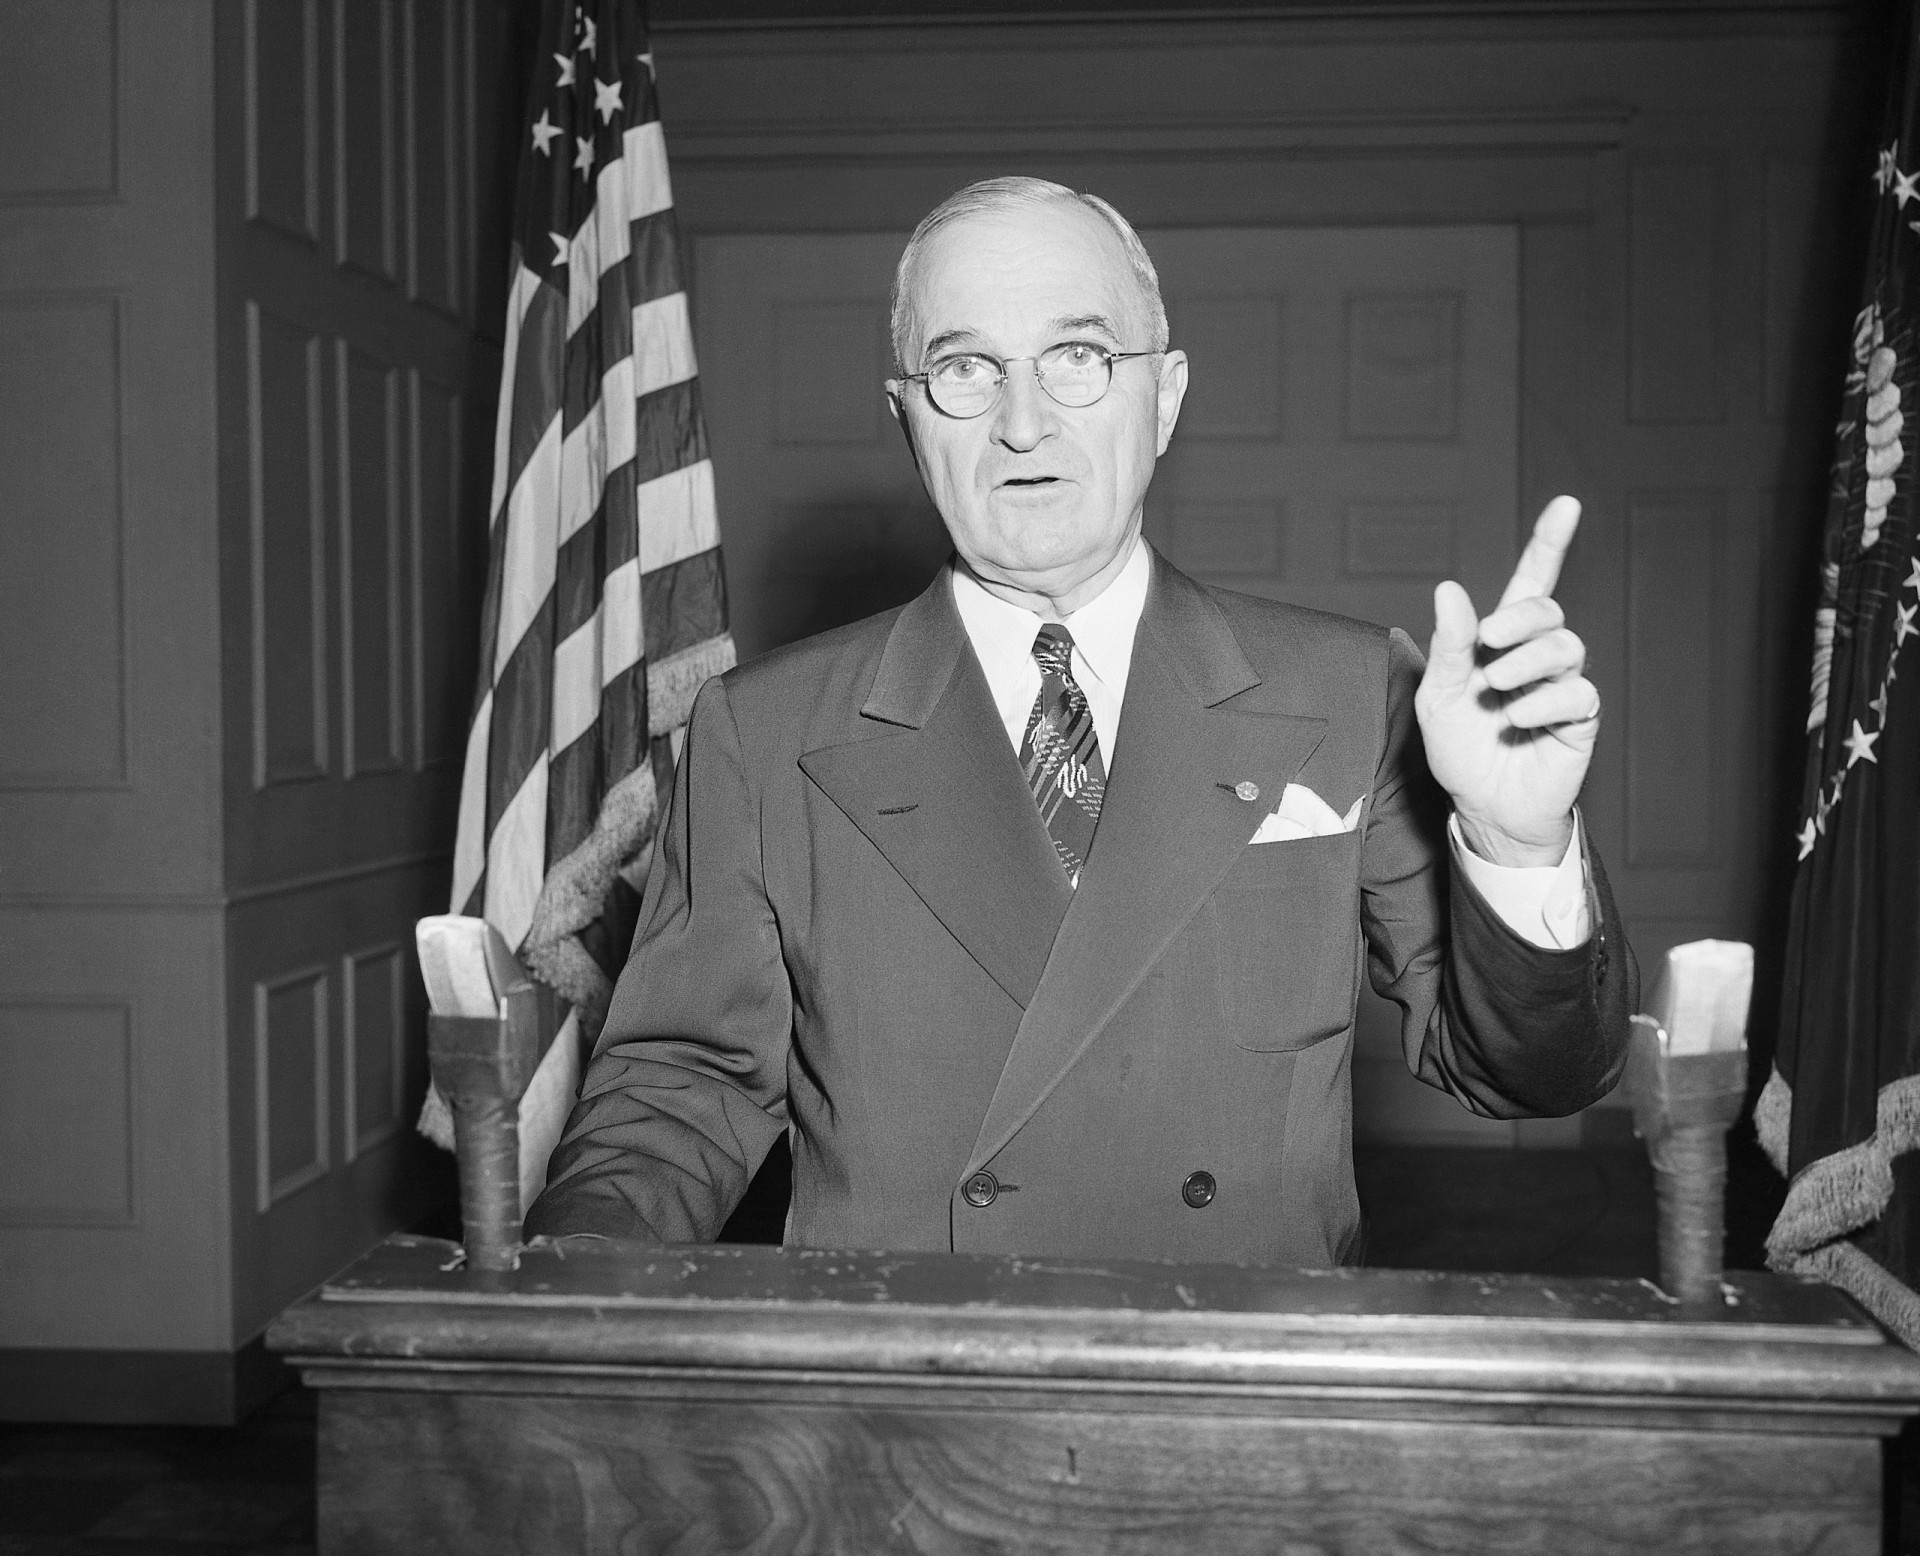 <p>Zwei Monate nach den Bombenangriffen auf Japan setzte sich Oppenheimer mit Truman zusammen und besprach mit ihm die Bedenken über einen möglichen künftigen Atomkrieg mit der UdSSR. Truman erinnerte sich später an dieses Treffen und schrieb in einem Brief, der Vater der Atombombe sei ein "weinerlicher Wissenschaftler".</p>